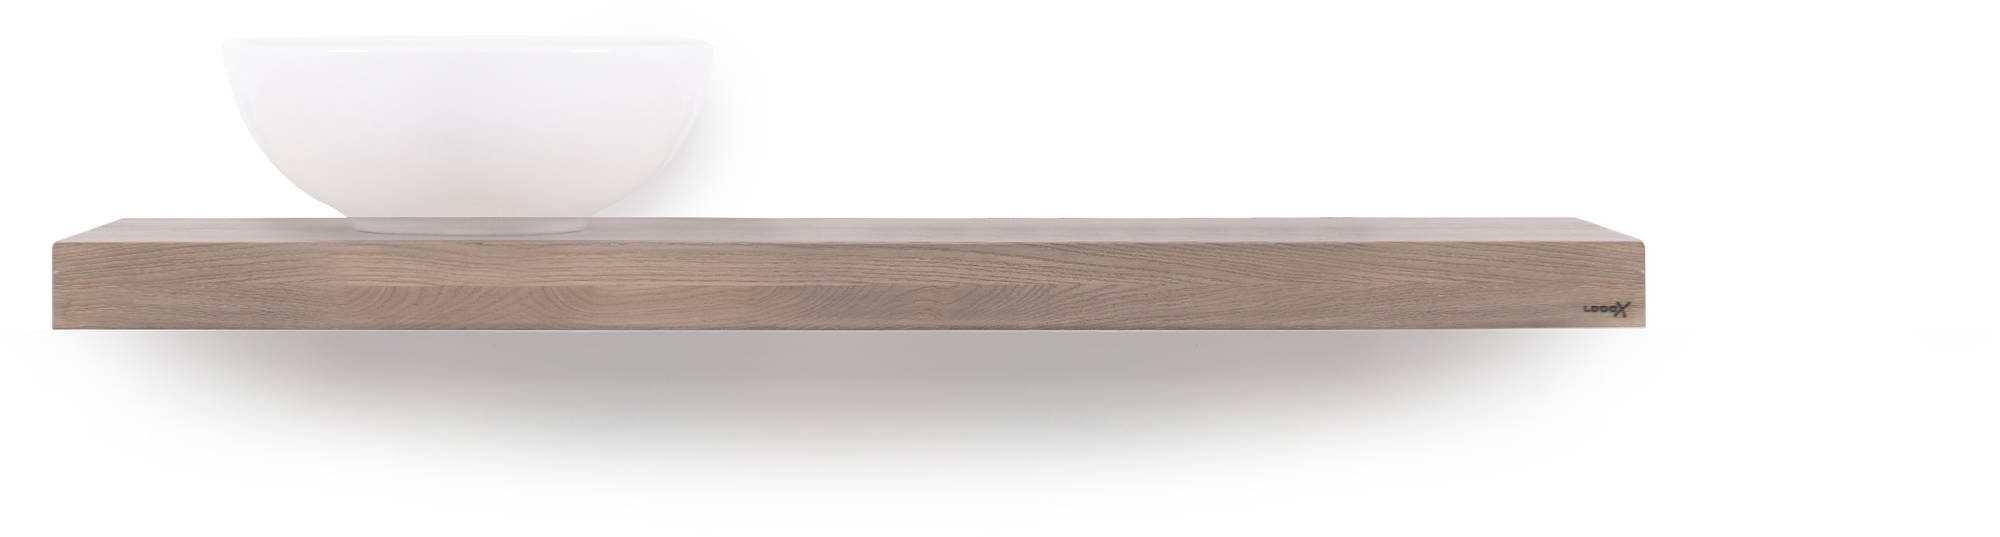 Looox Wooden Base Shelf Solo Eiken 120 cm Old Grey/RVS